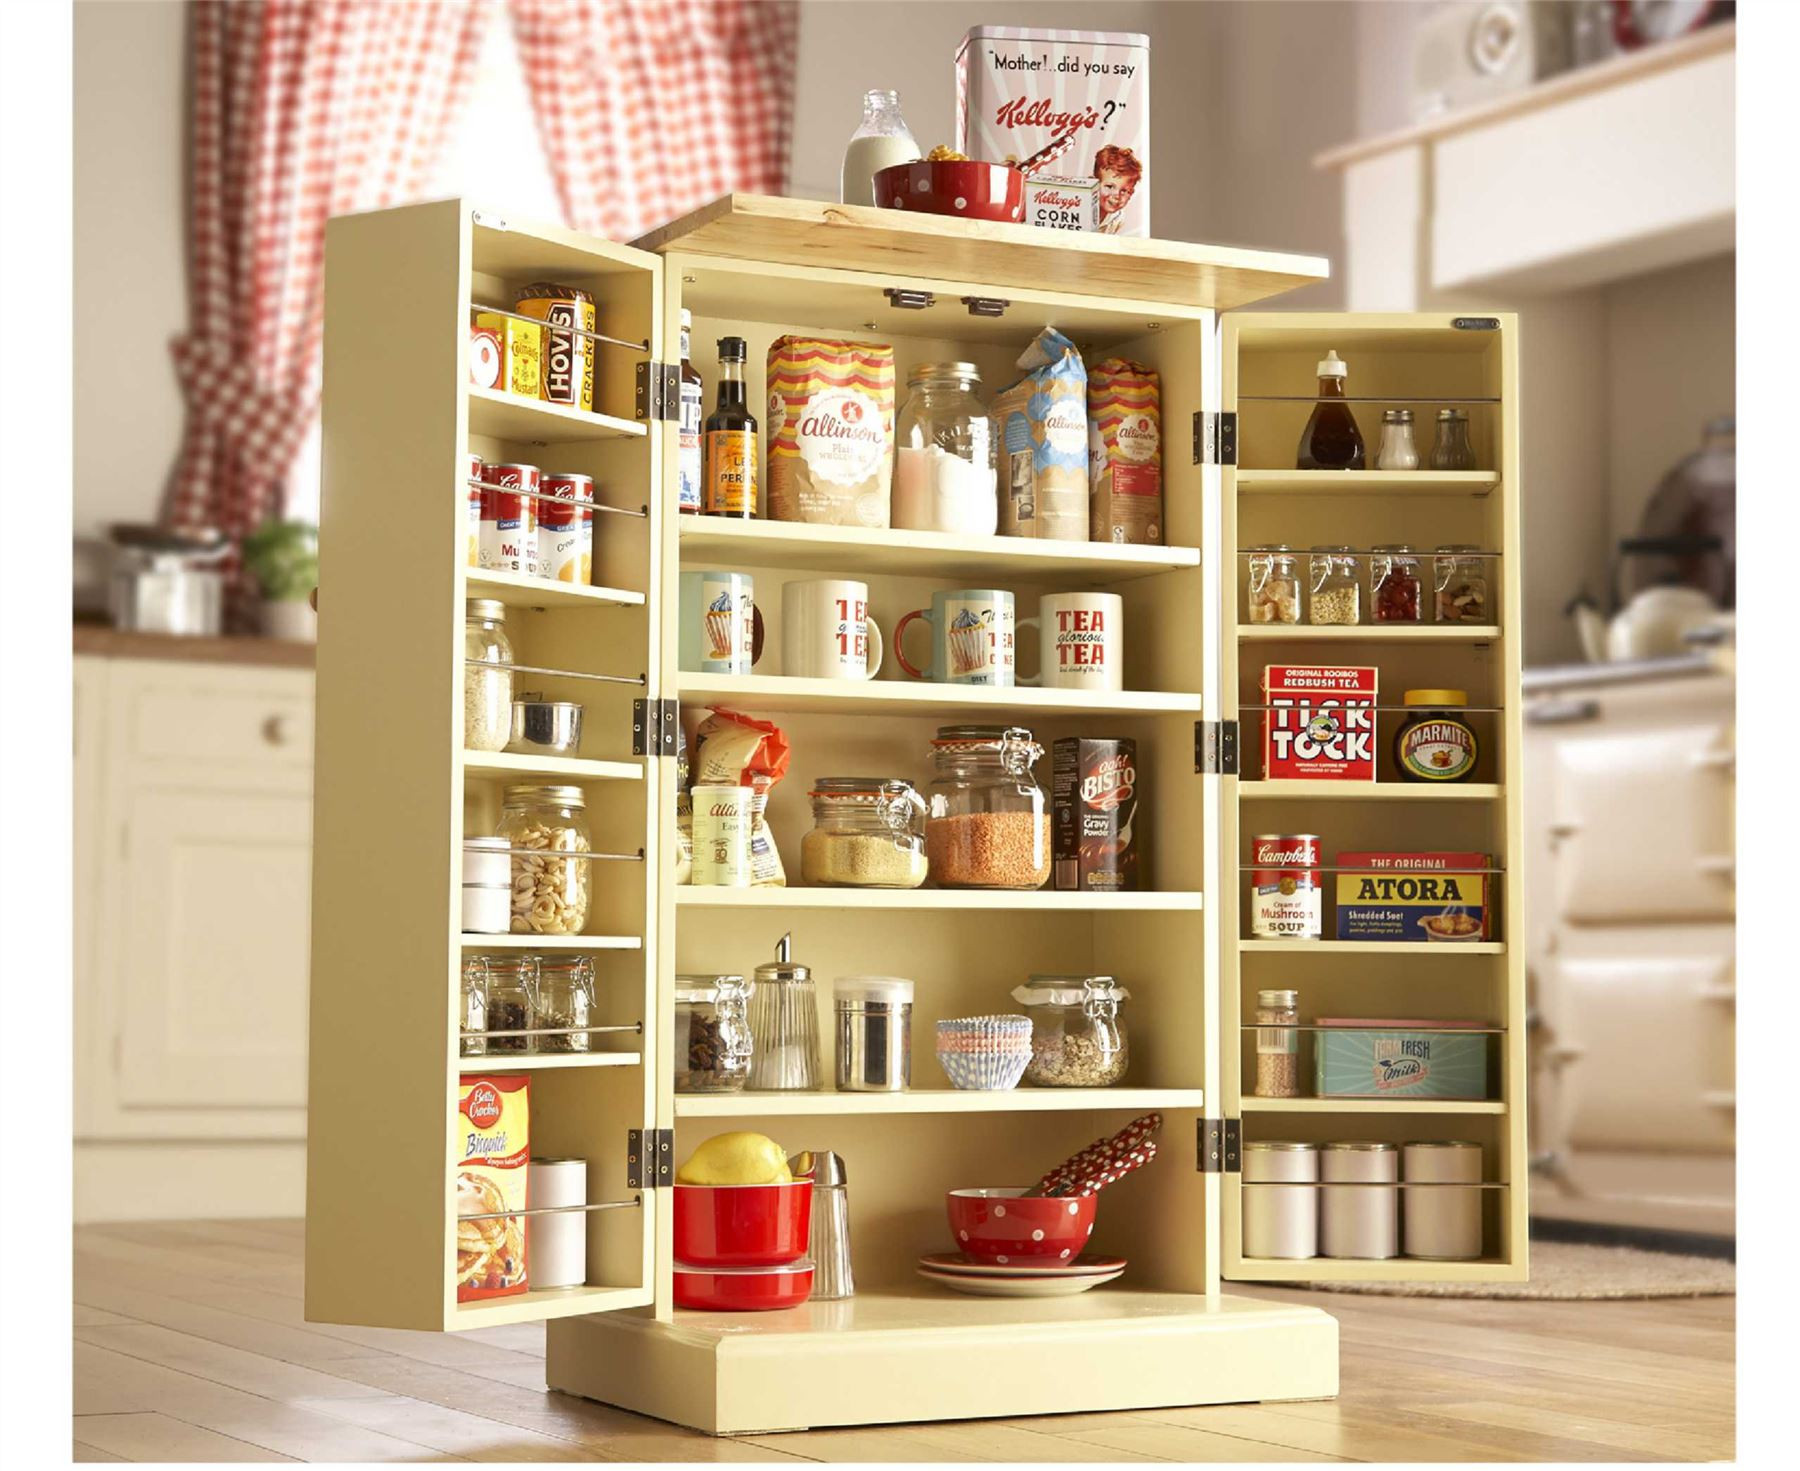 Best ideas about Kitchen Storage Cabinet Freestanding
. Save or Pin Freestanding Larder Wooden Cupboard Buttermilk Kitchen Now.